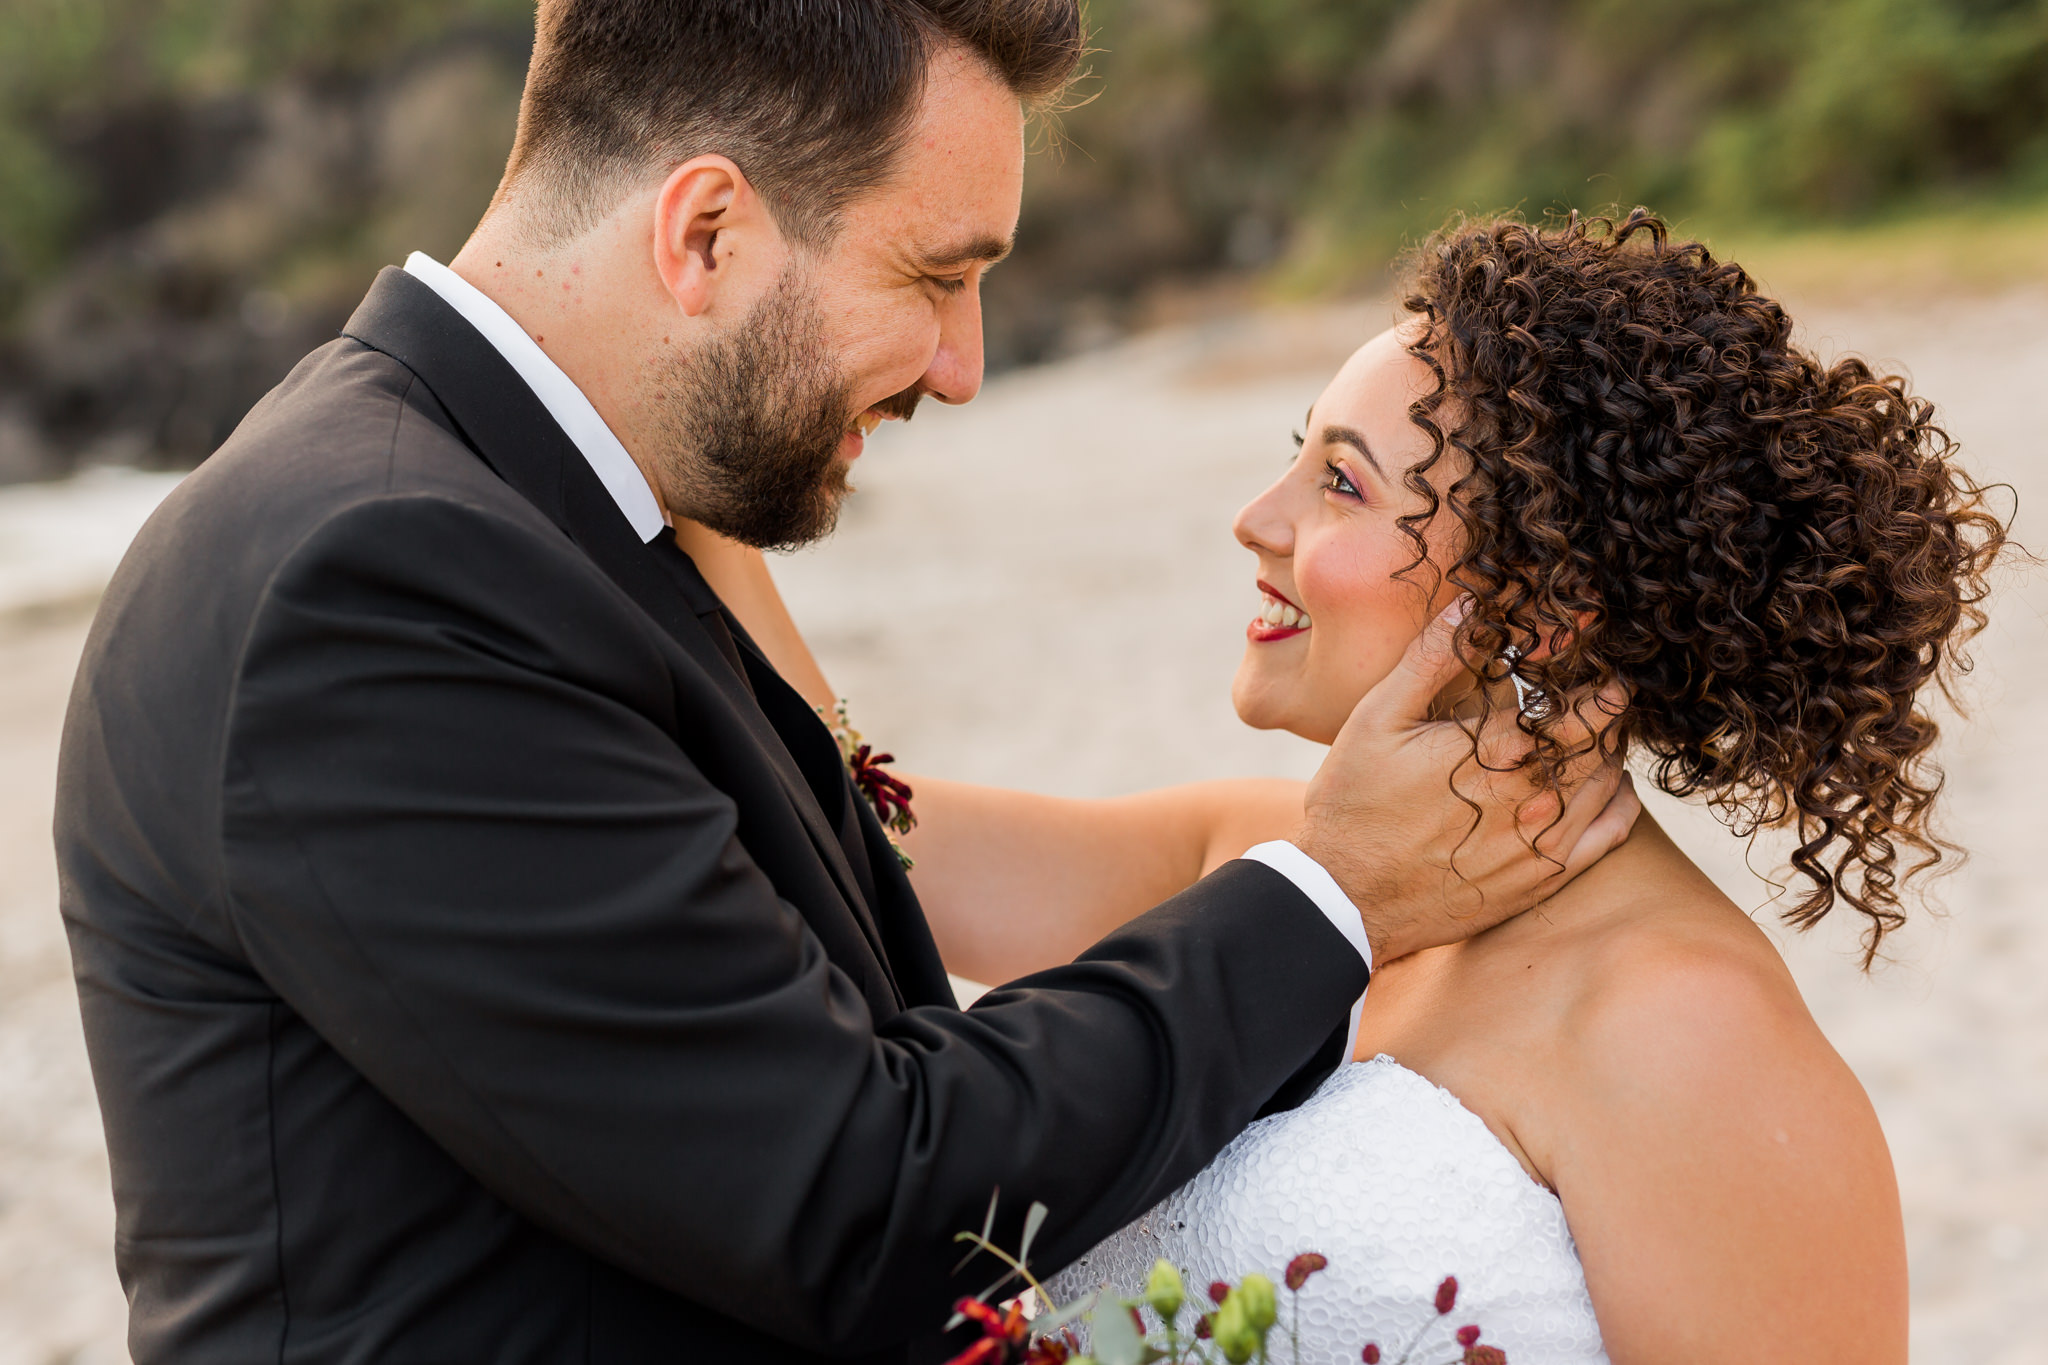 Un couple amoureux lors de leur mariage sur la plage de grande anse à la Réunion par la photographe Fanny Tiara